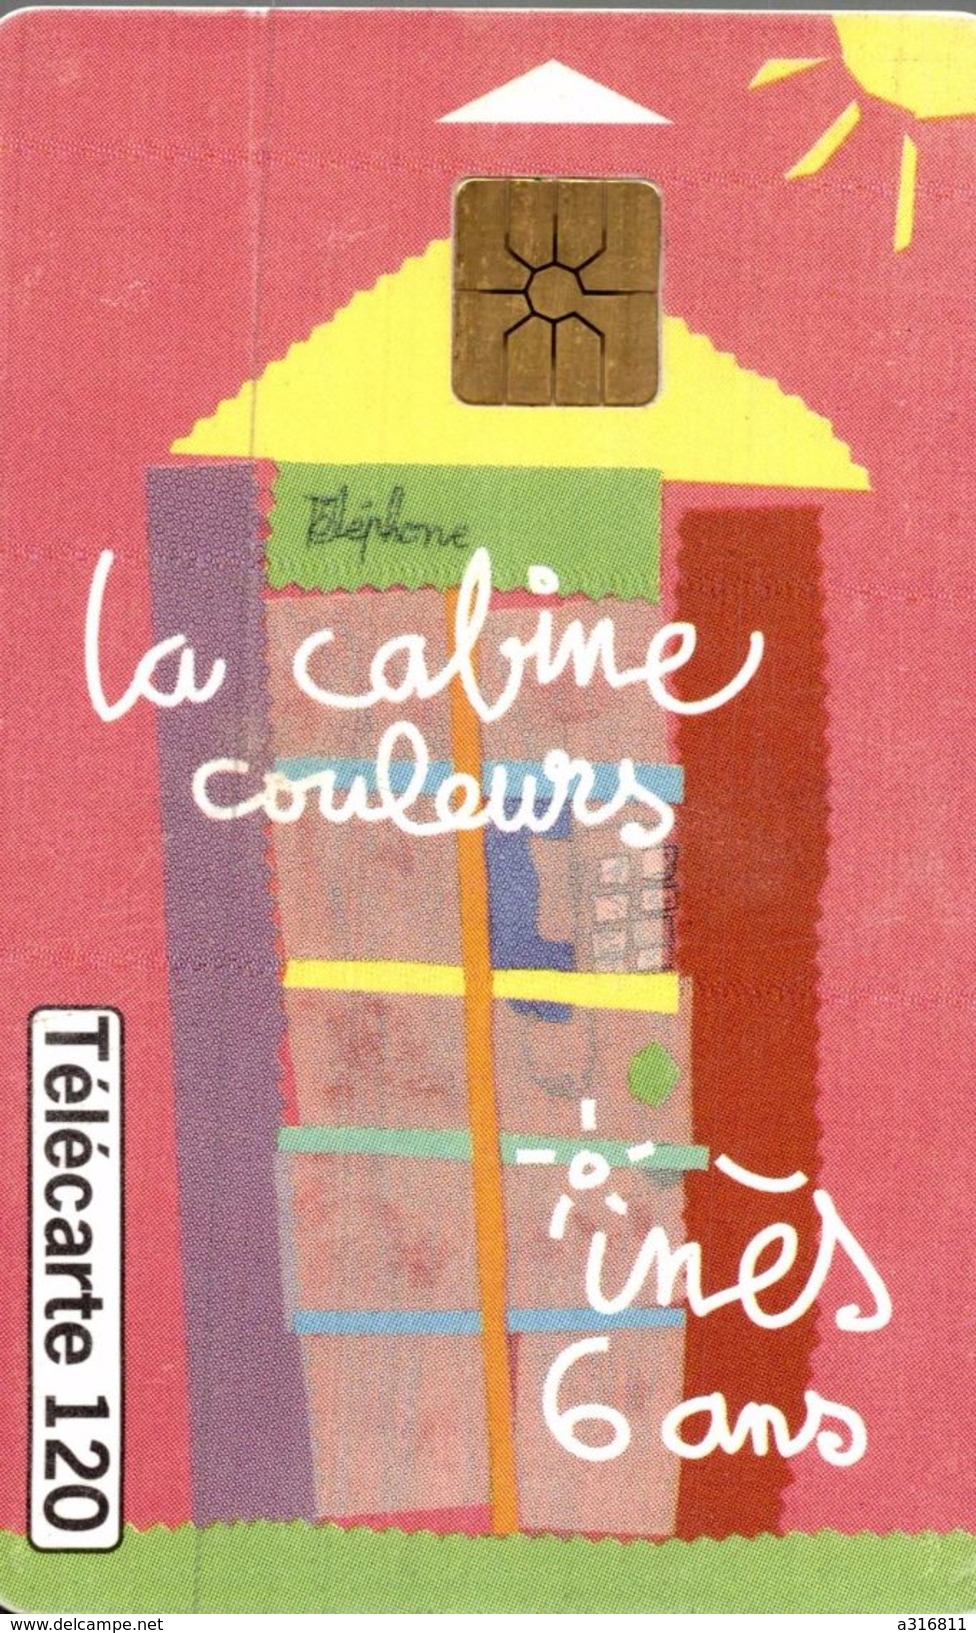 LA CABINE COULEURS - 120 Unità